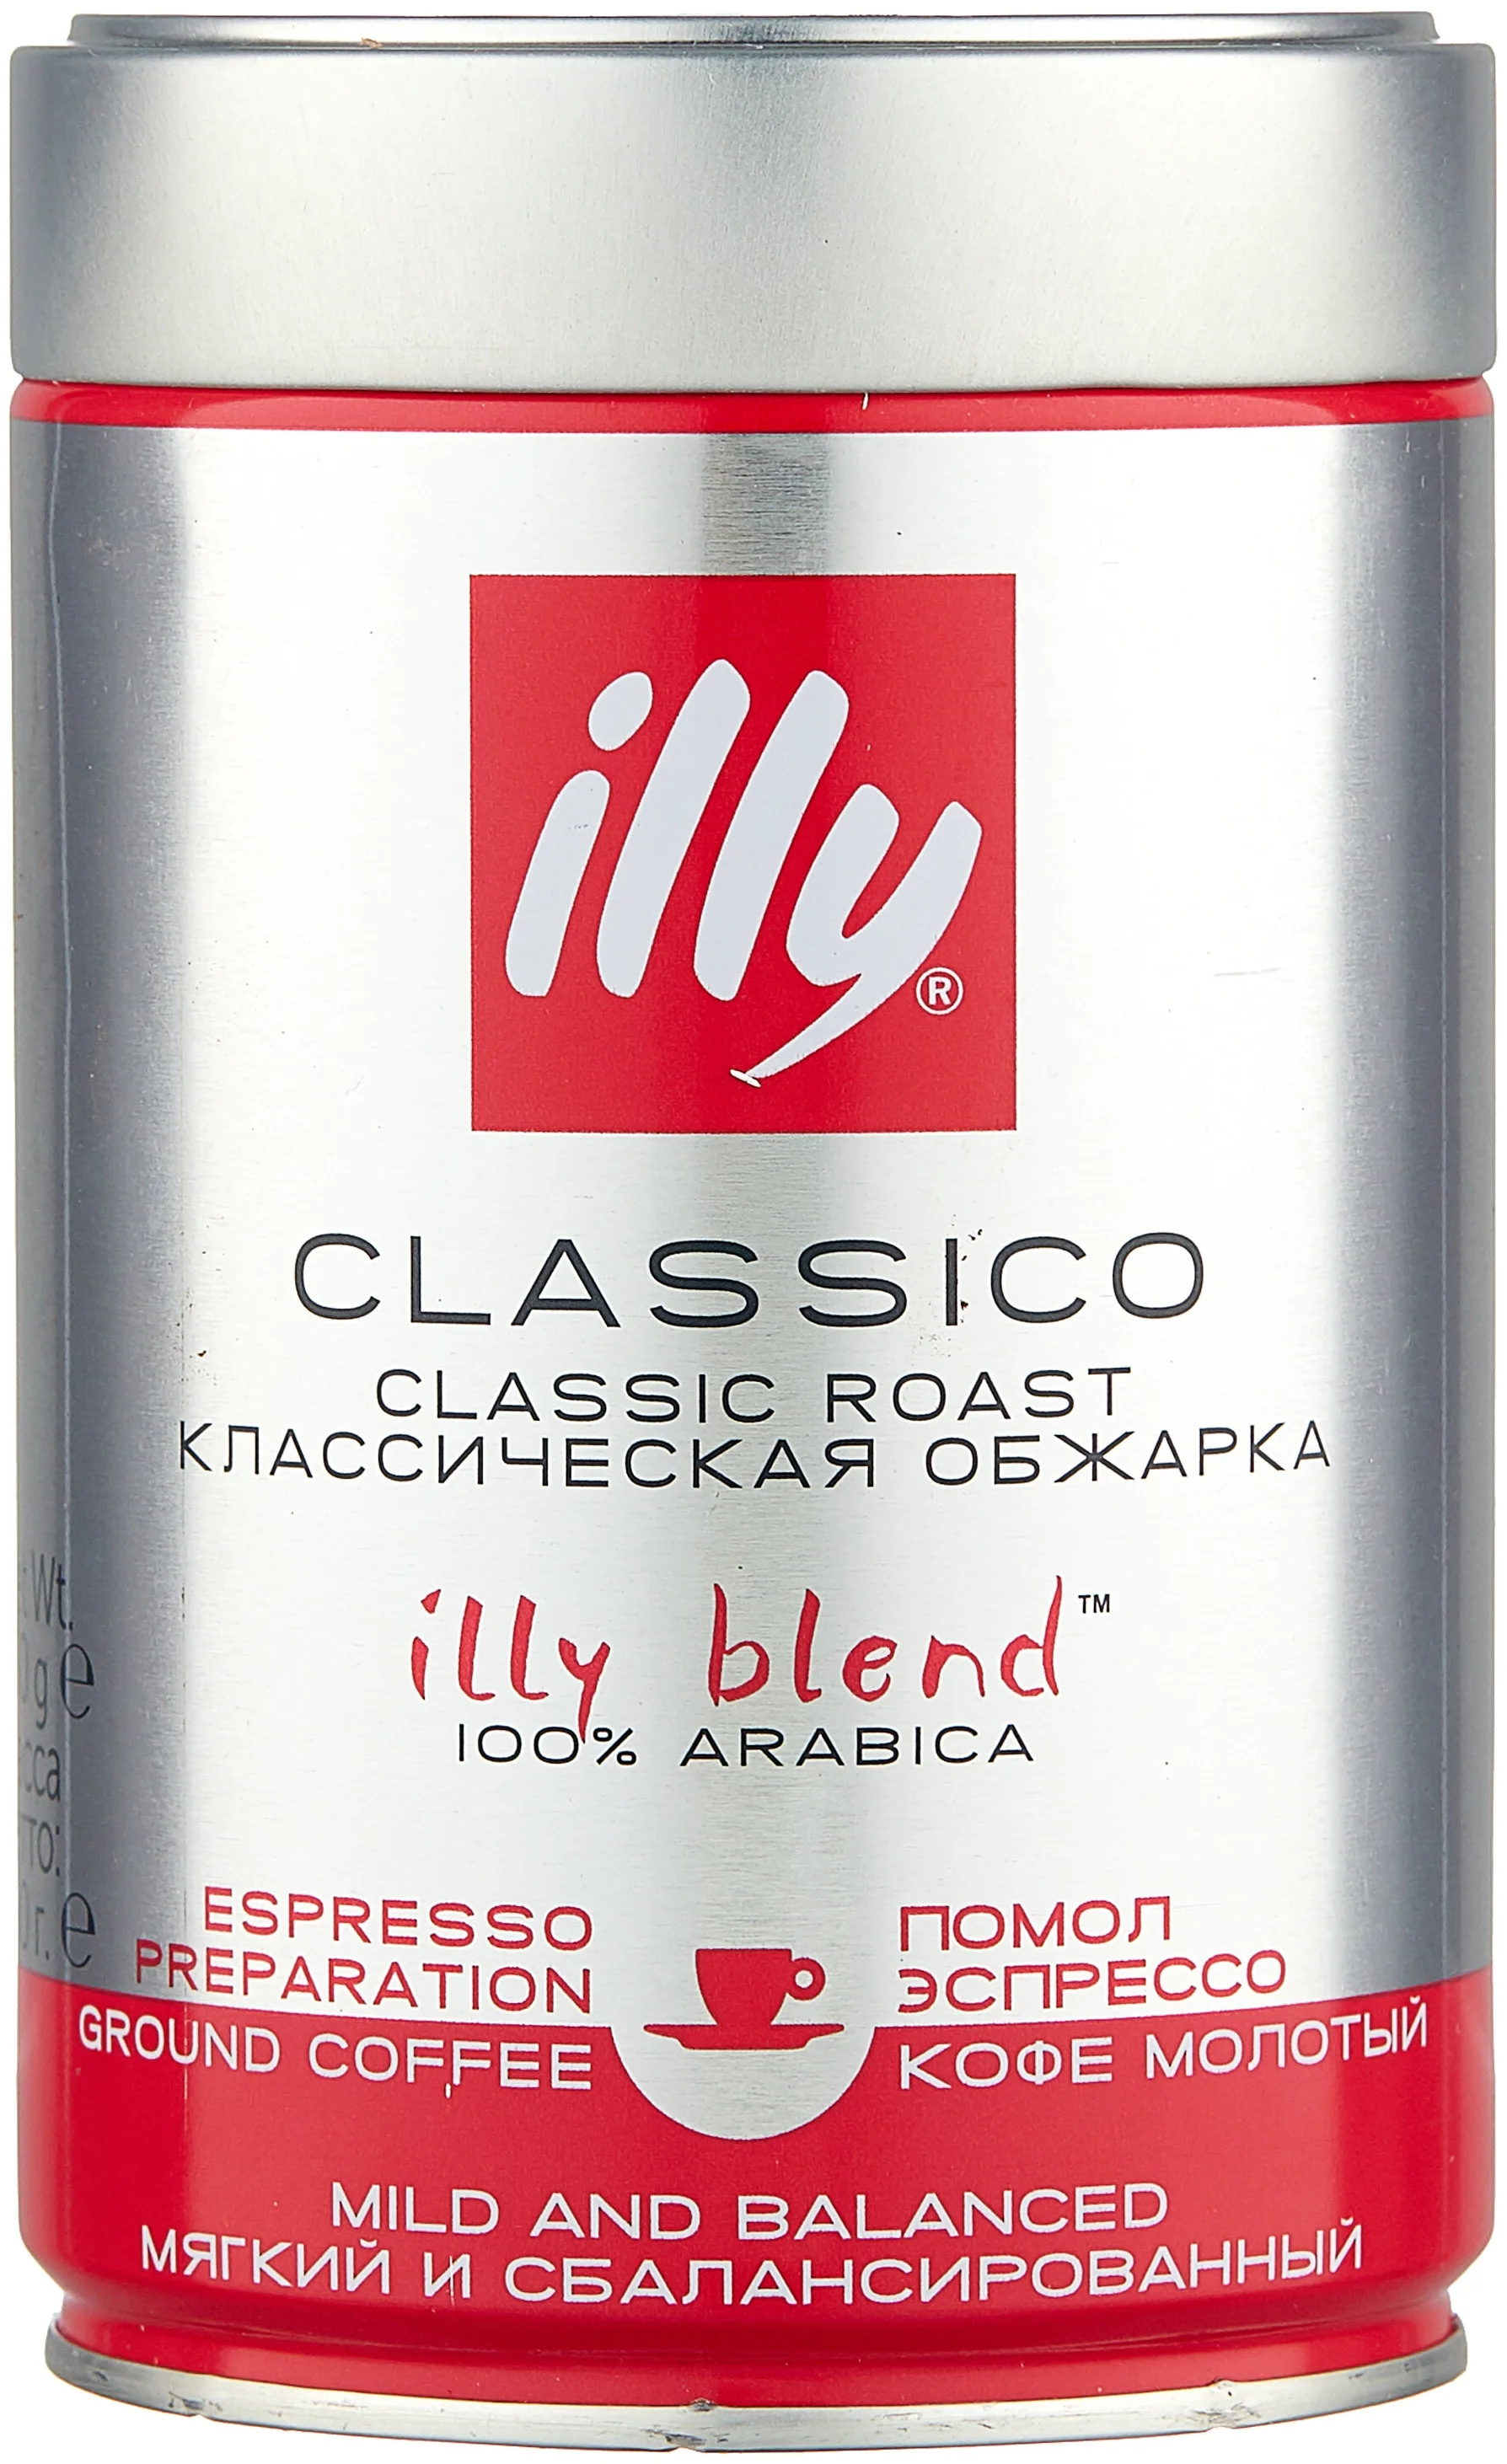 Illy "Classico Espresso" - вид зерен: арабика